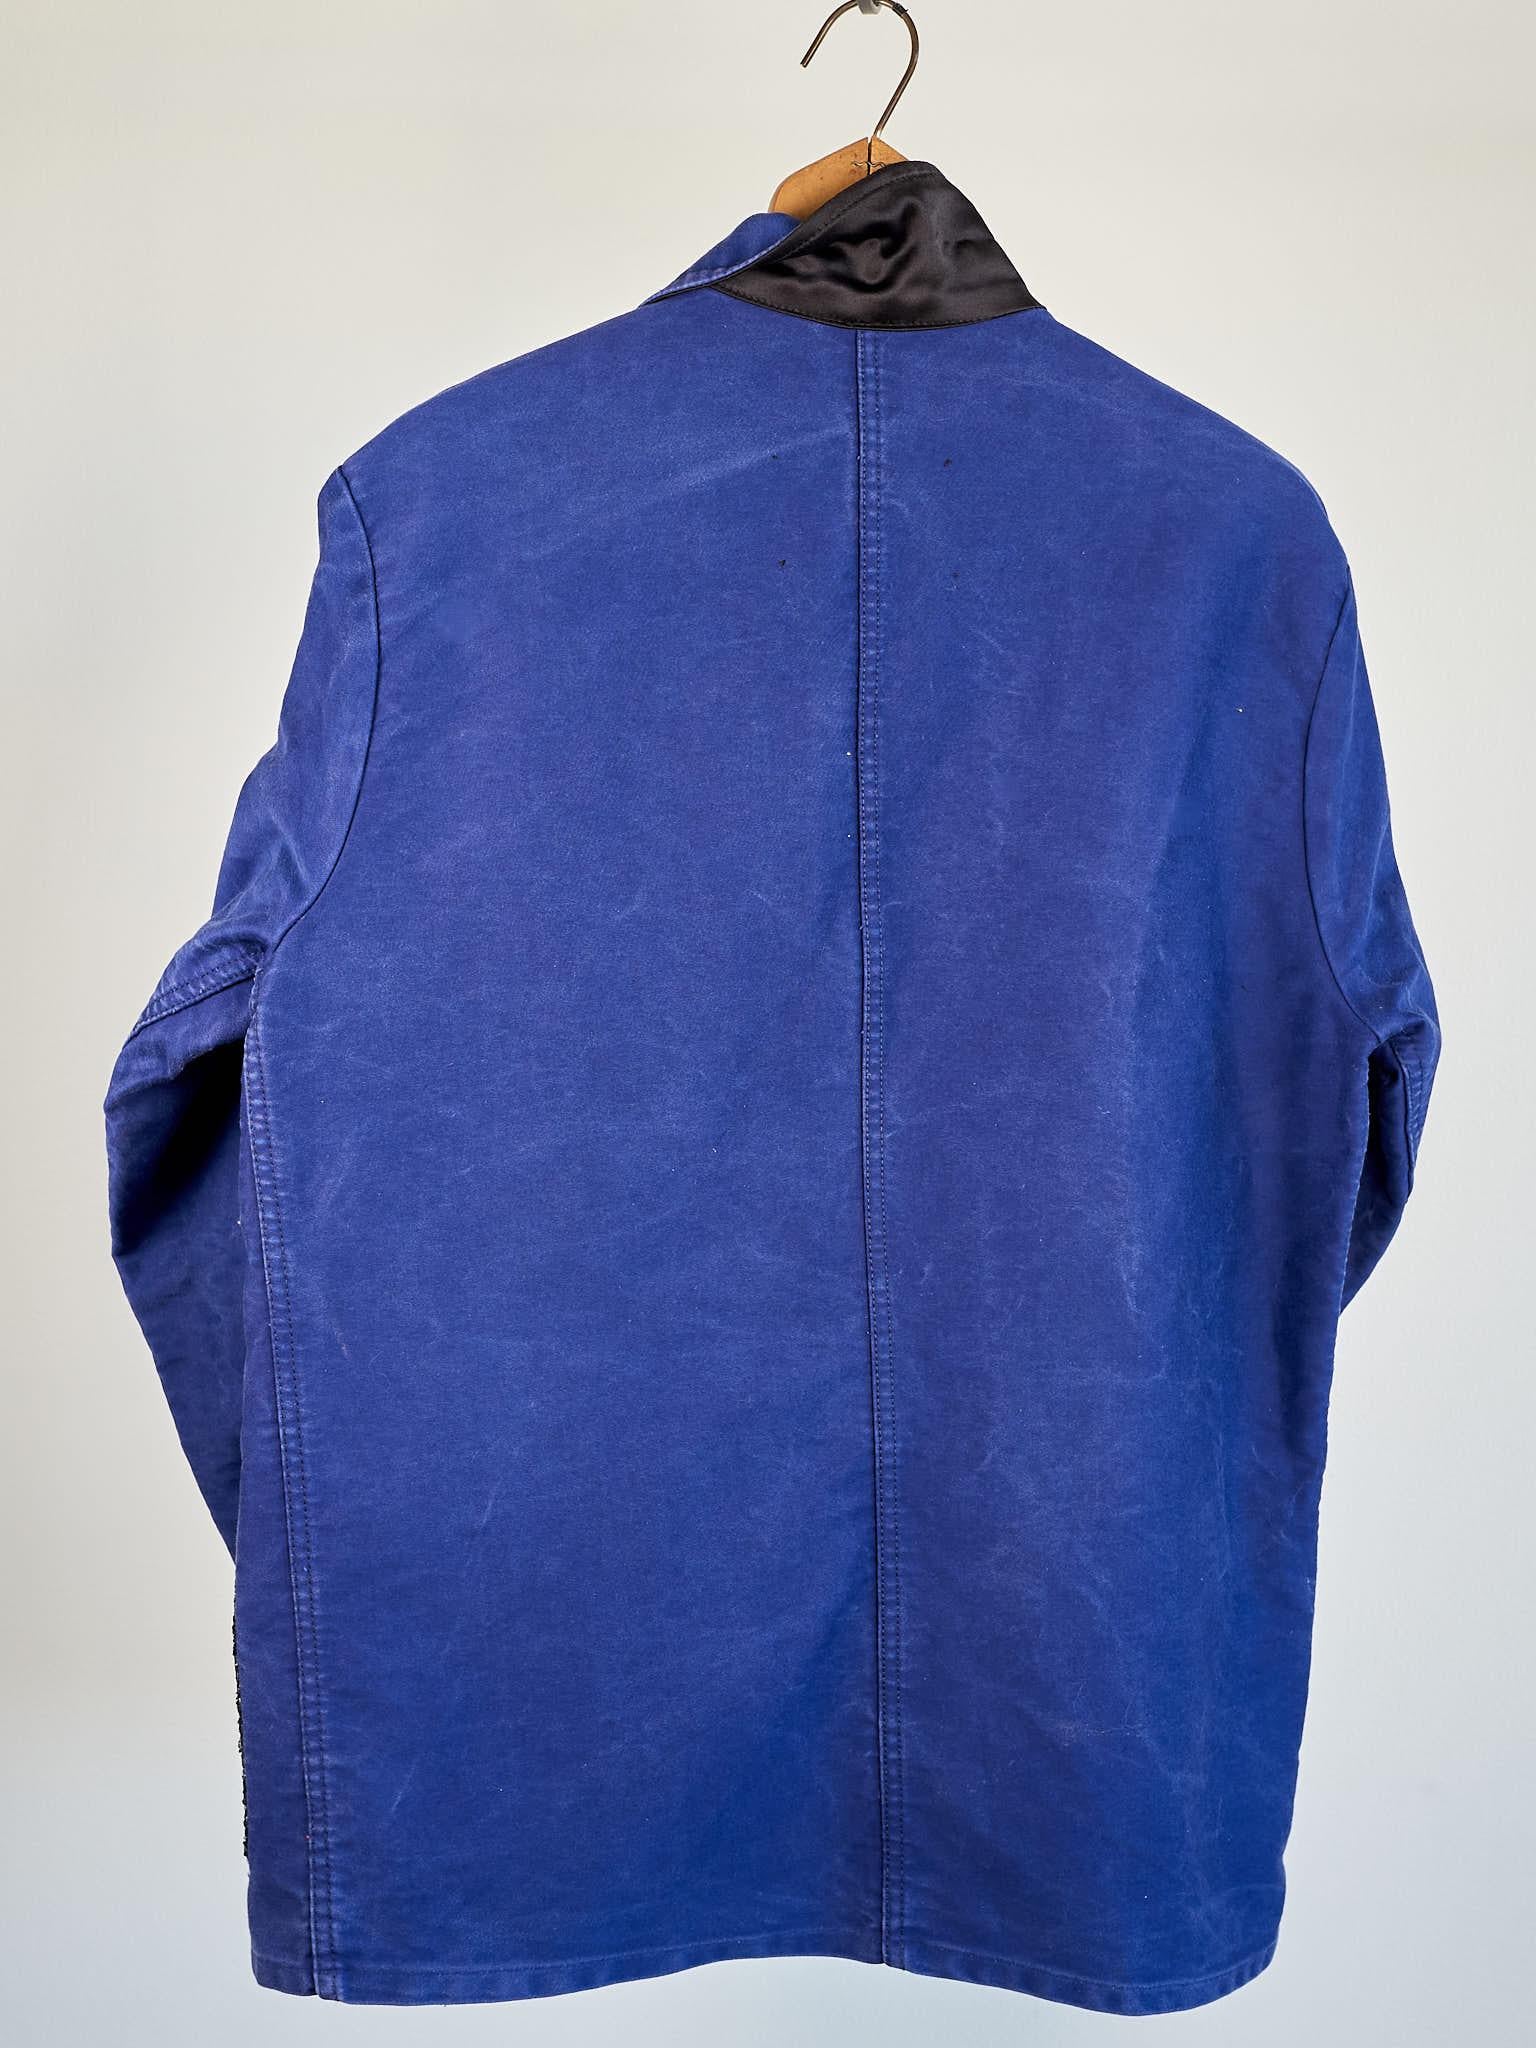 Vintage Jacket French Blue Work Silver Tweed Repurposed J Dauphin Large 3